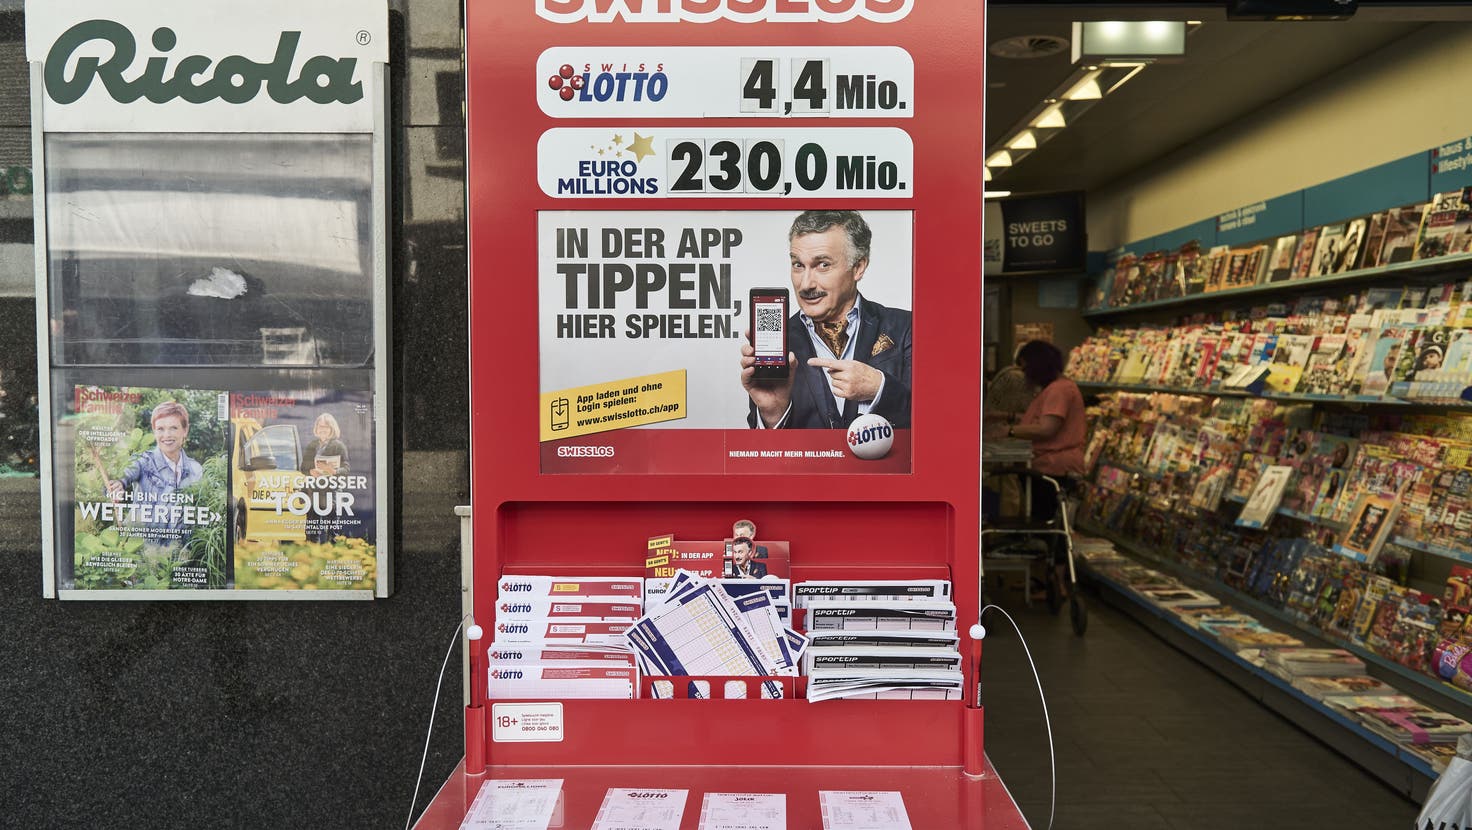 Das Lotto-Fieber steigt: Im Jackpot von Euromillions warten 230 Millionen Euro auf eine glückliche Gewinnerin oder einen glücklichen Gewinner – so viel wie noch nie. (Roland Schmid)